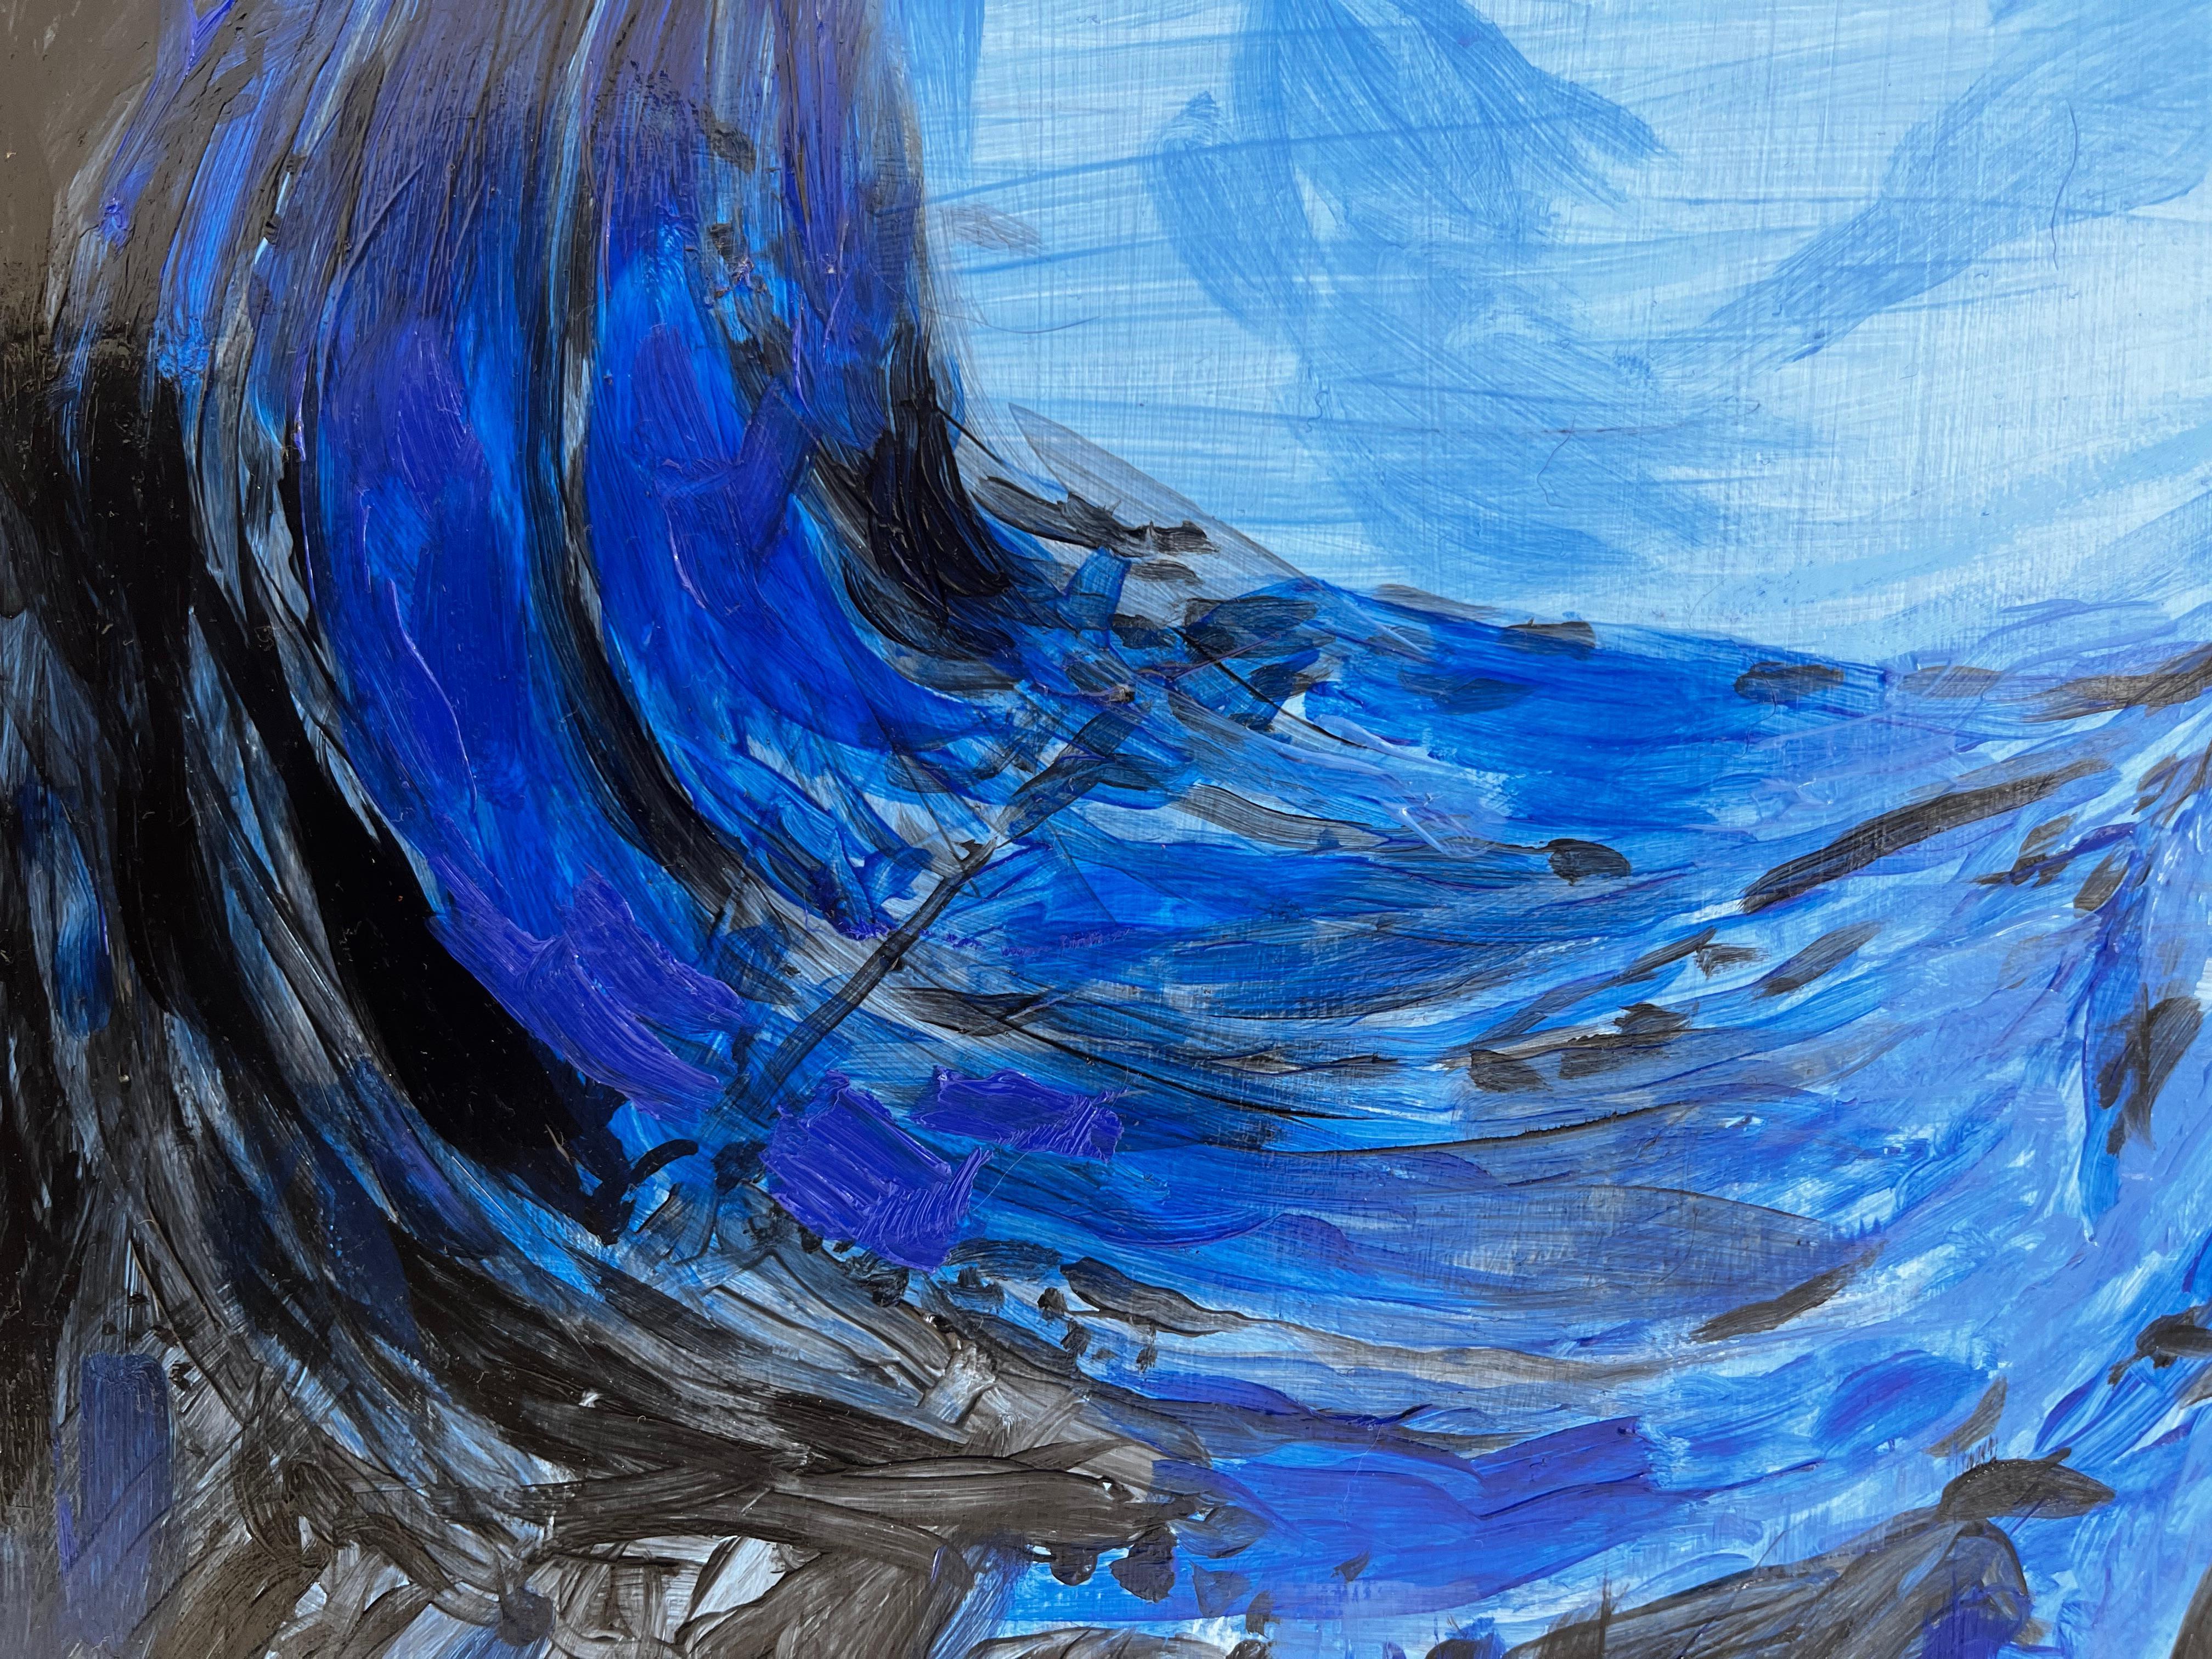 Utilisant de la peinture à l'huile pure, qui donne à l'œuvre sa texture unique, l'artiste parvient à utiliser deux couleurs particulièrement difficiles à travailler : le noir et le bleu. Dans sa composition, il crée l'illusion que le tableau va